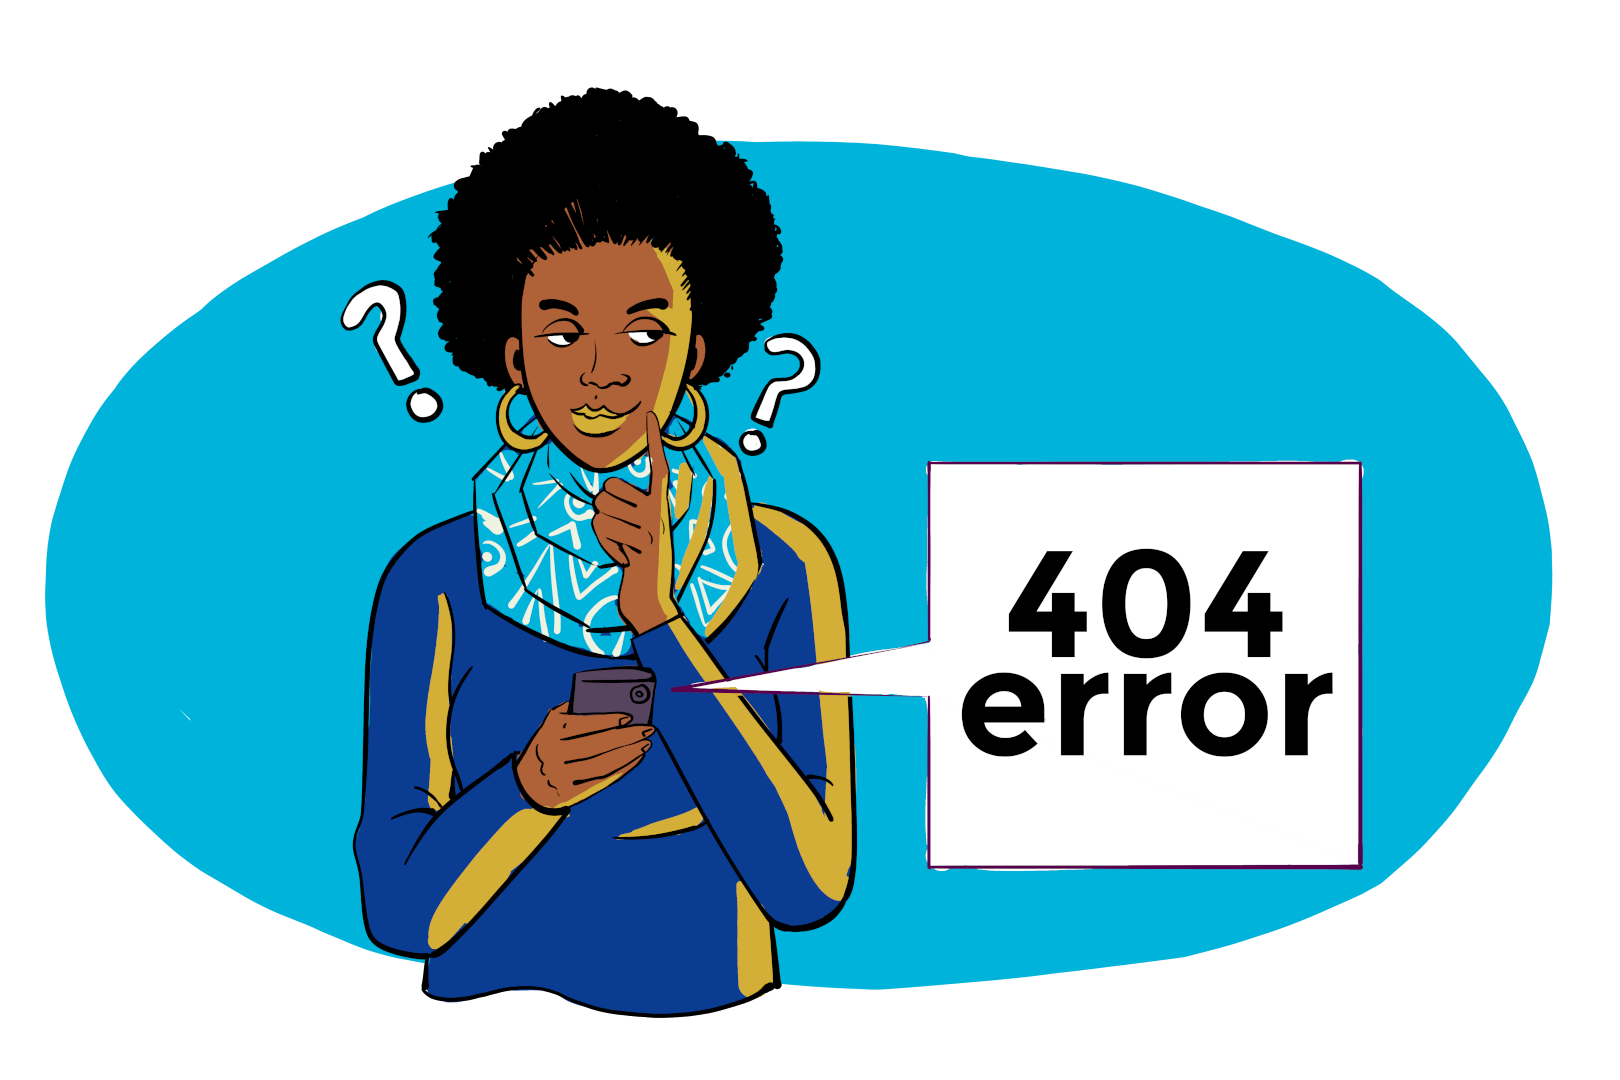 404 error. Page not found